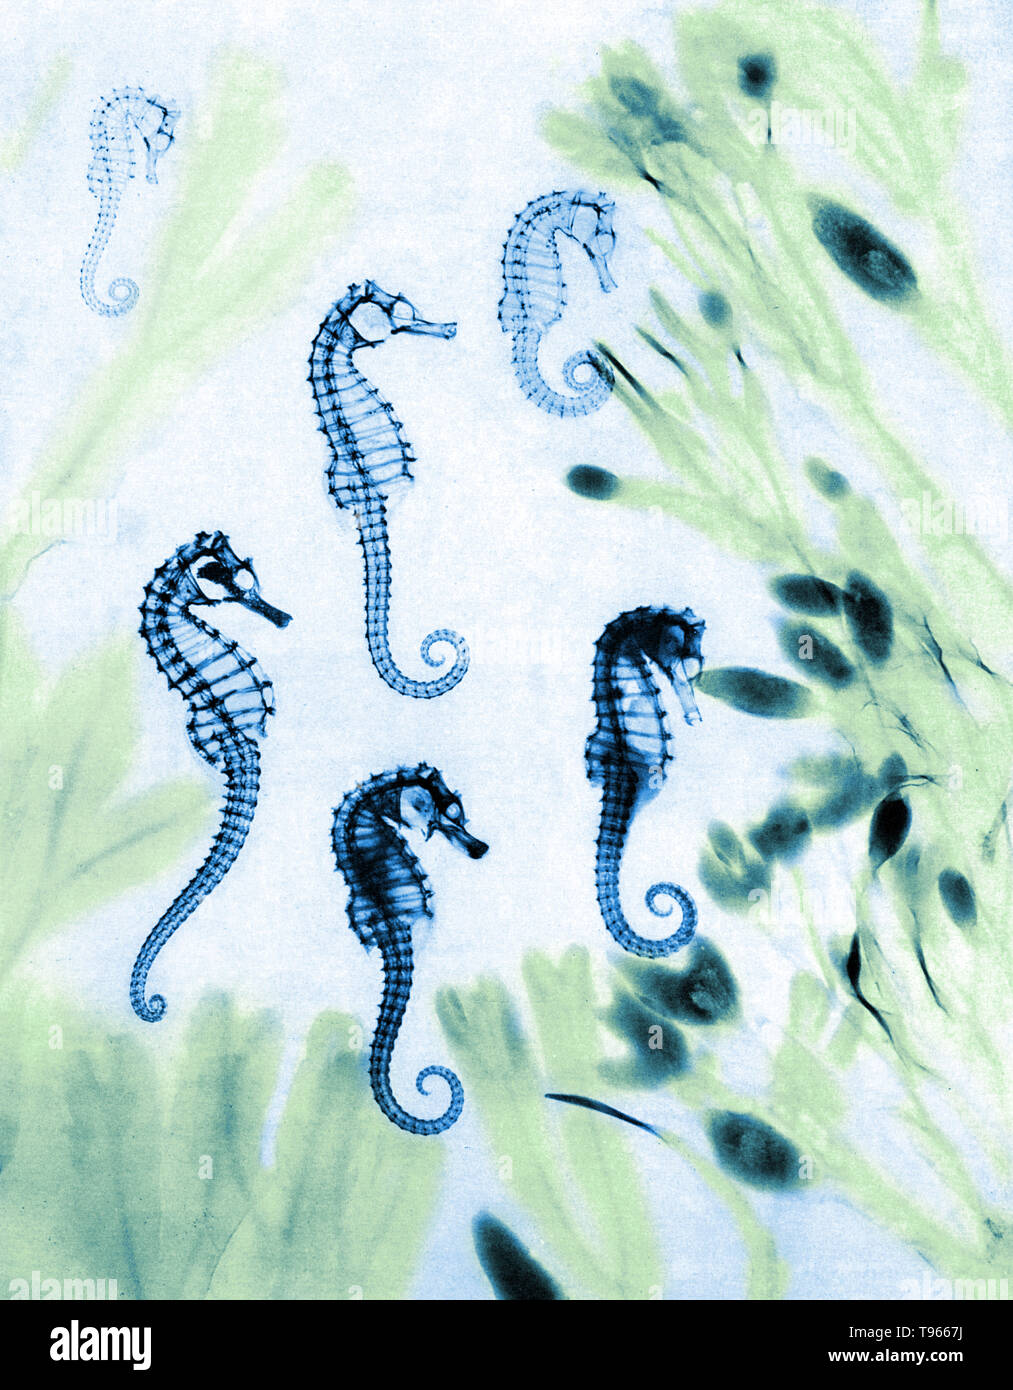 Storico x-ray dei cavallucci marini (Hippocampus sp.). Quelli che guardano cava sono stati morti per mentre e vengono essiccate. Gli altri sono appena morto ed alcuni organi interni può essere visto. Le alghe intorno i cavallucci marini è seghettato wrack (Fucus serratus) a sinistra e la vescica wrack (Fucus vesiculosus) a destra. Questo x-ray è stata realizzata da E. C. le Grice e fu pubblicato a Londra illustrato News il 12 agosto 1933. Foto Stock